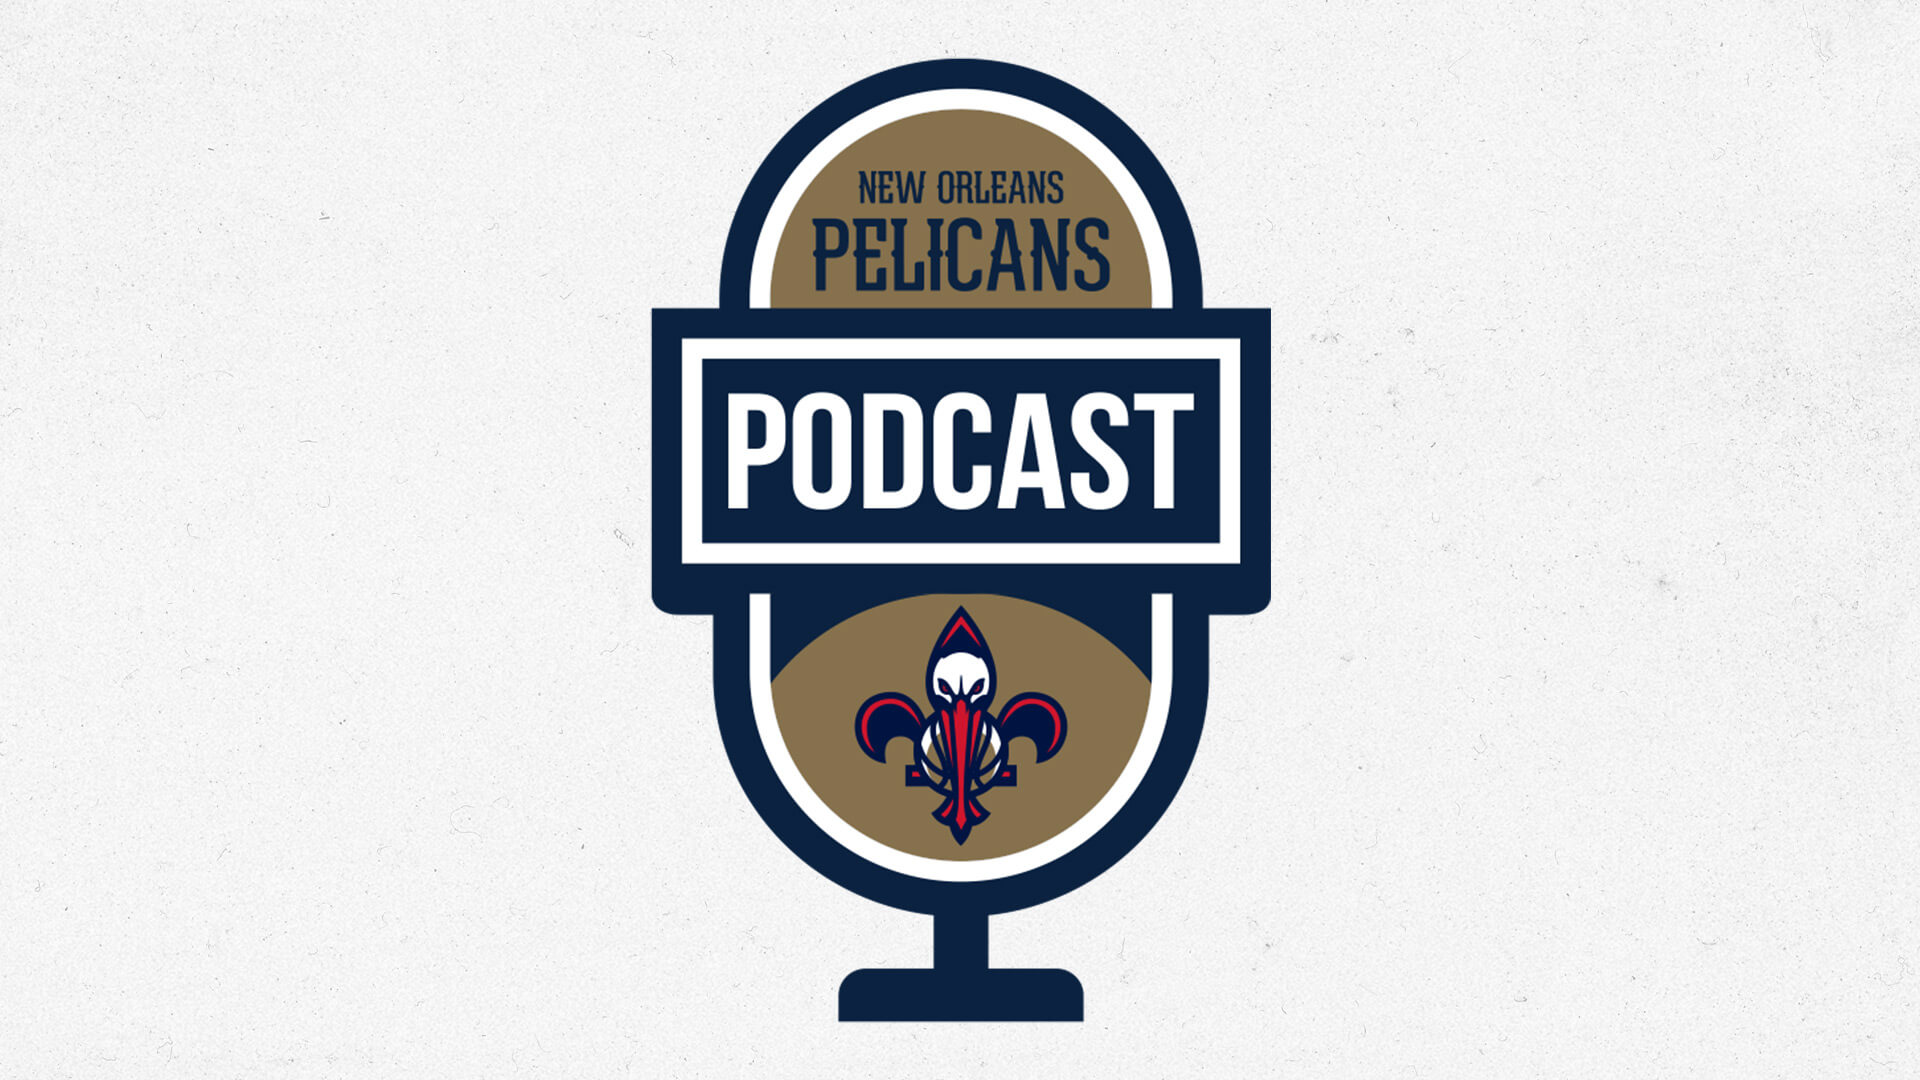 Antonio Daniels talks OKC game, remaining schedule | Pelicans Podcast